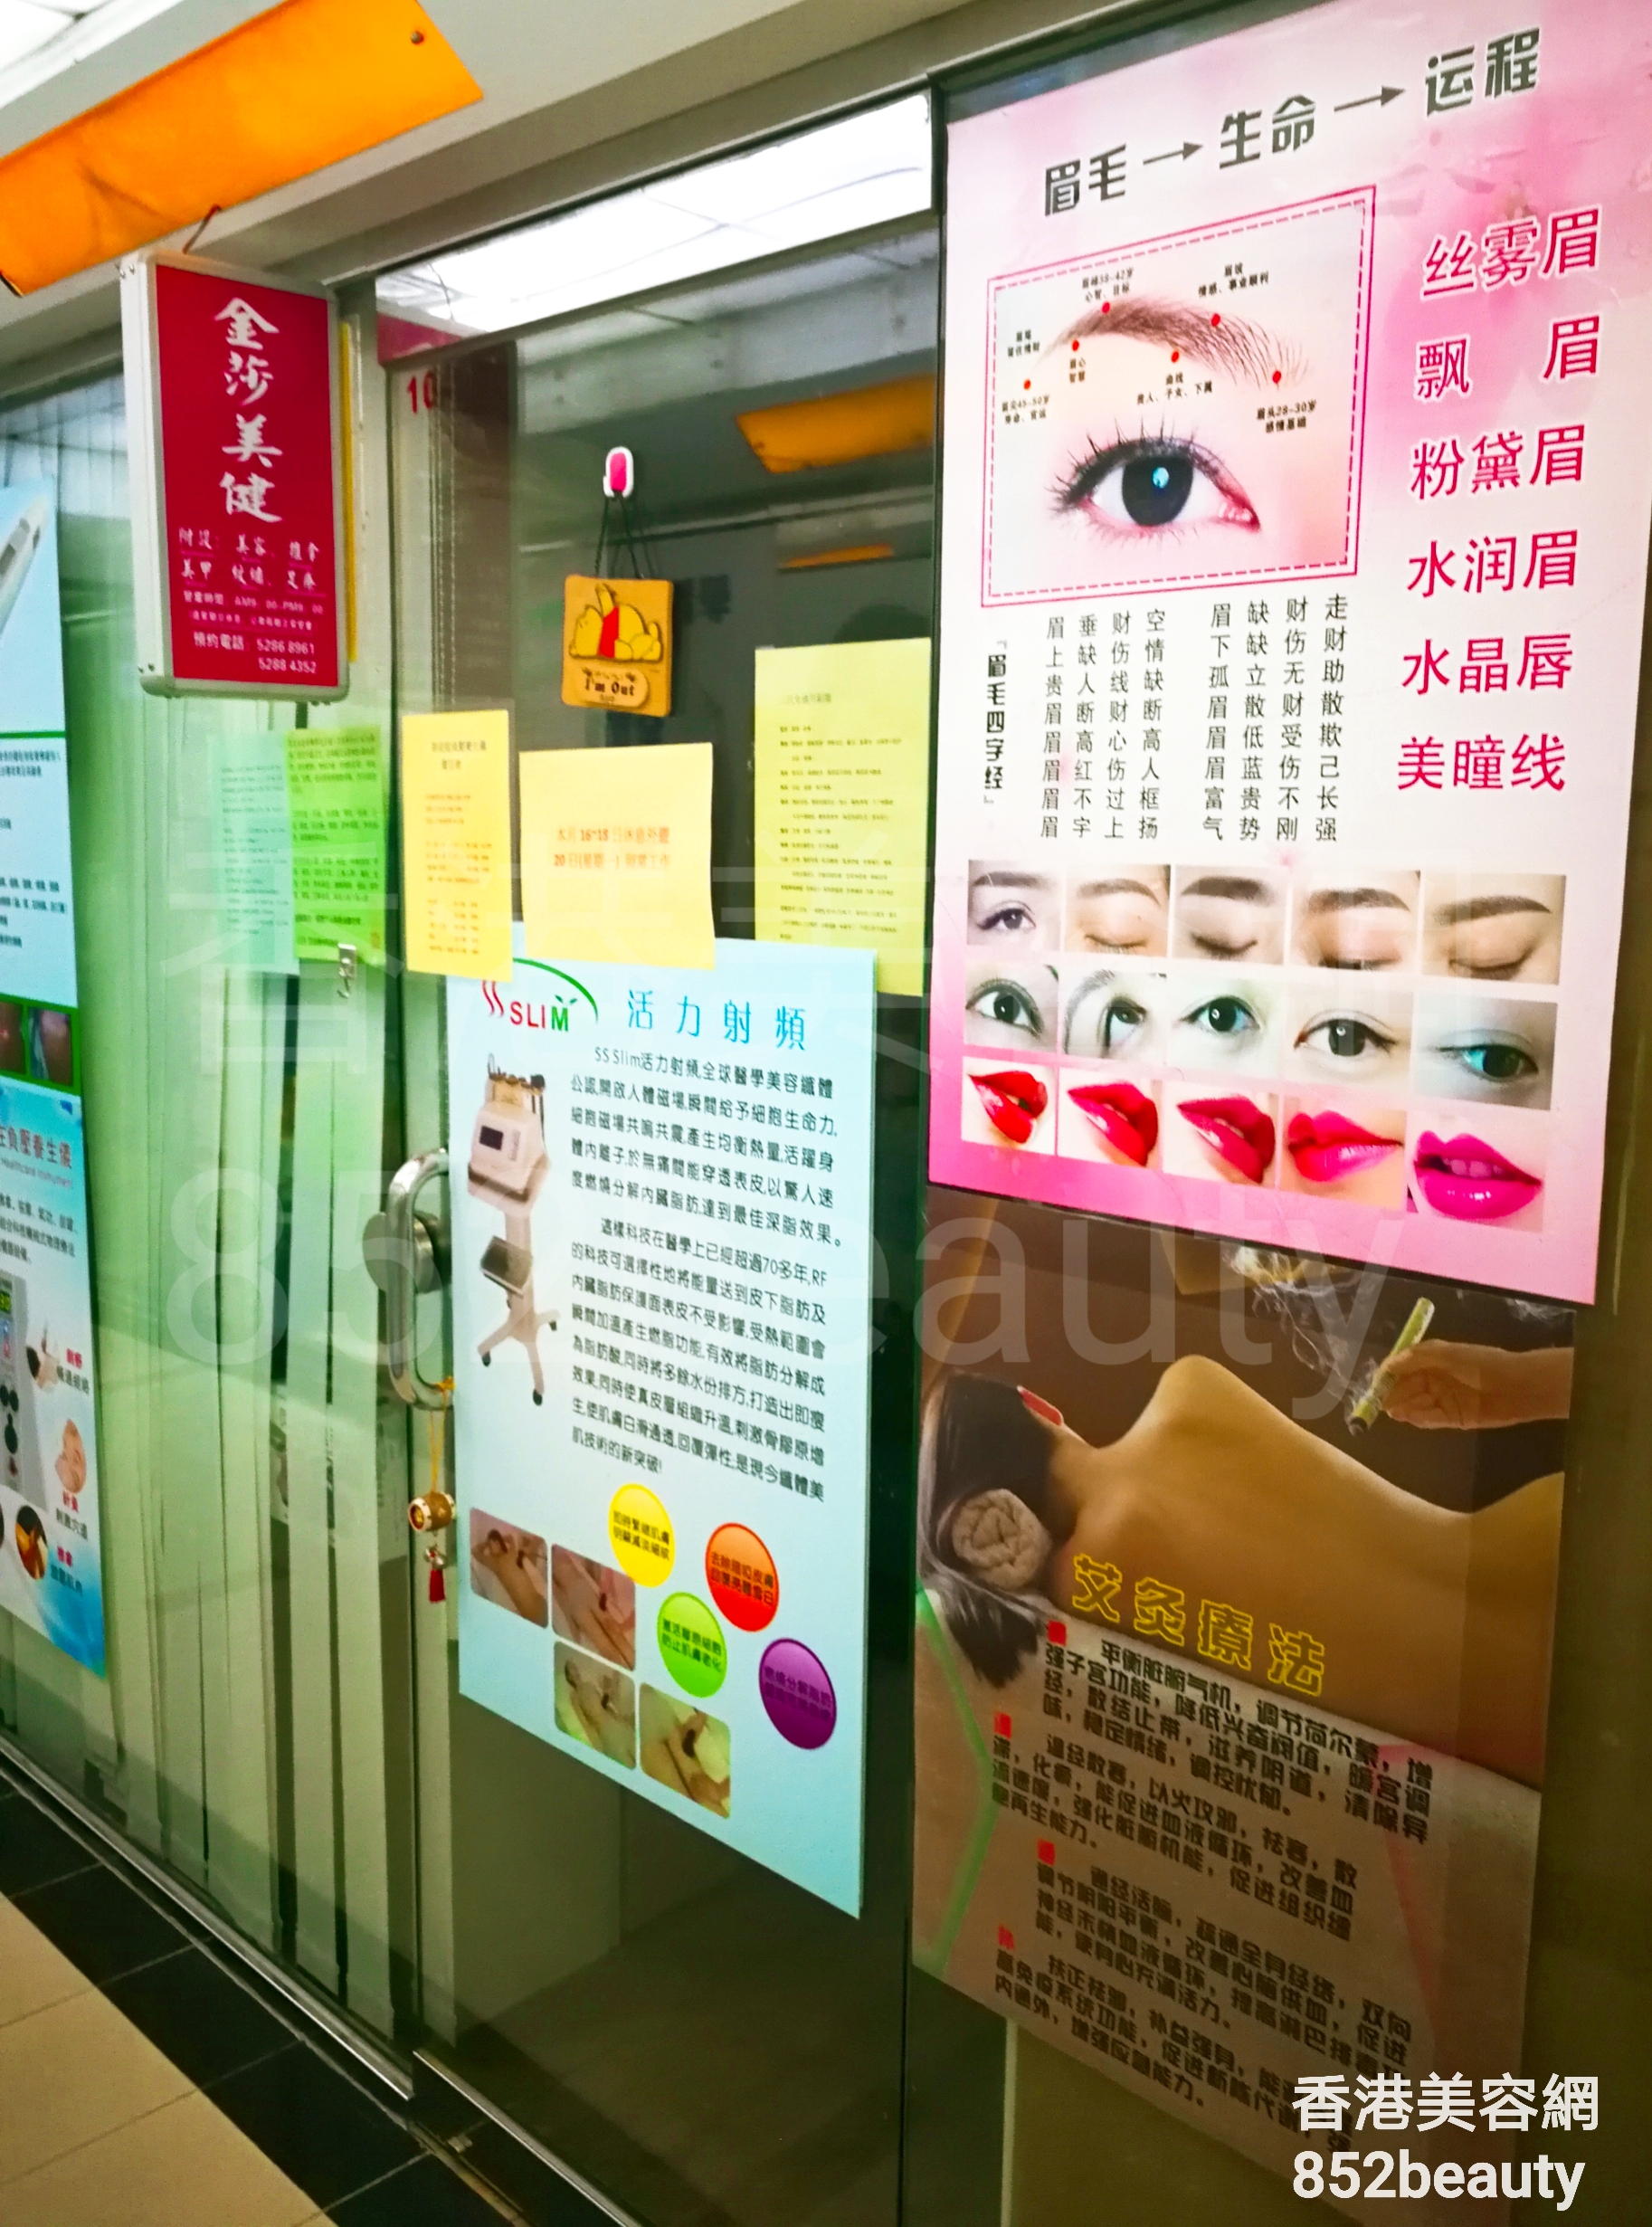 香港美容網 Hong Kong Beauty Salon 美容院 / 美容師: 金莎美健